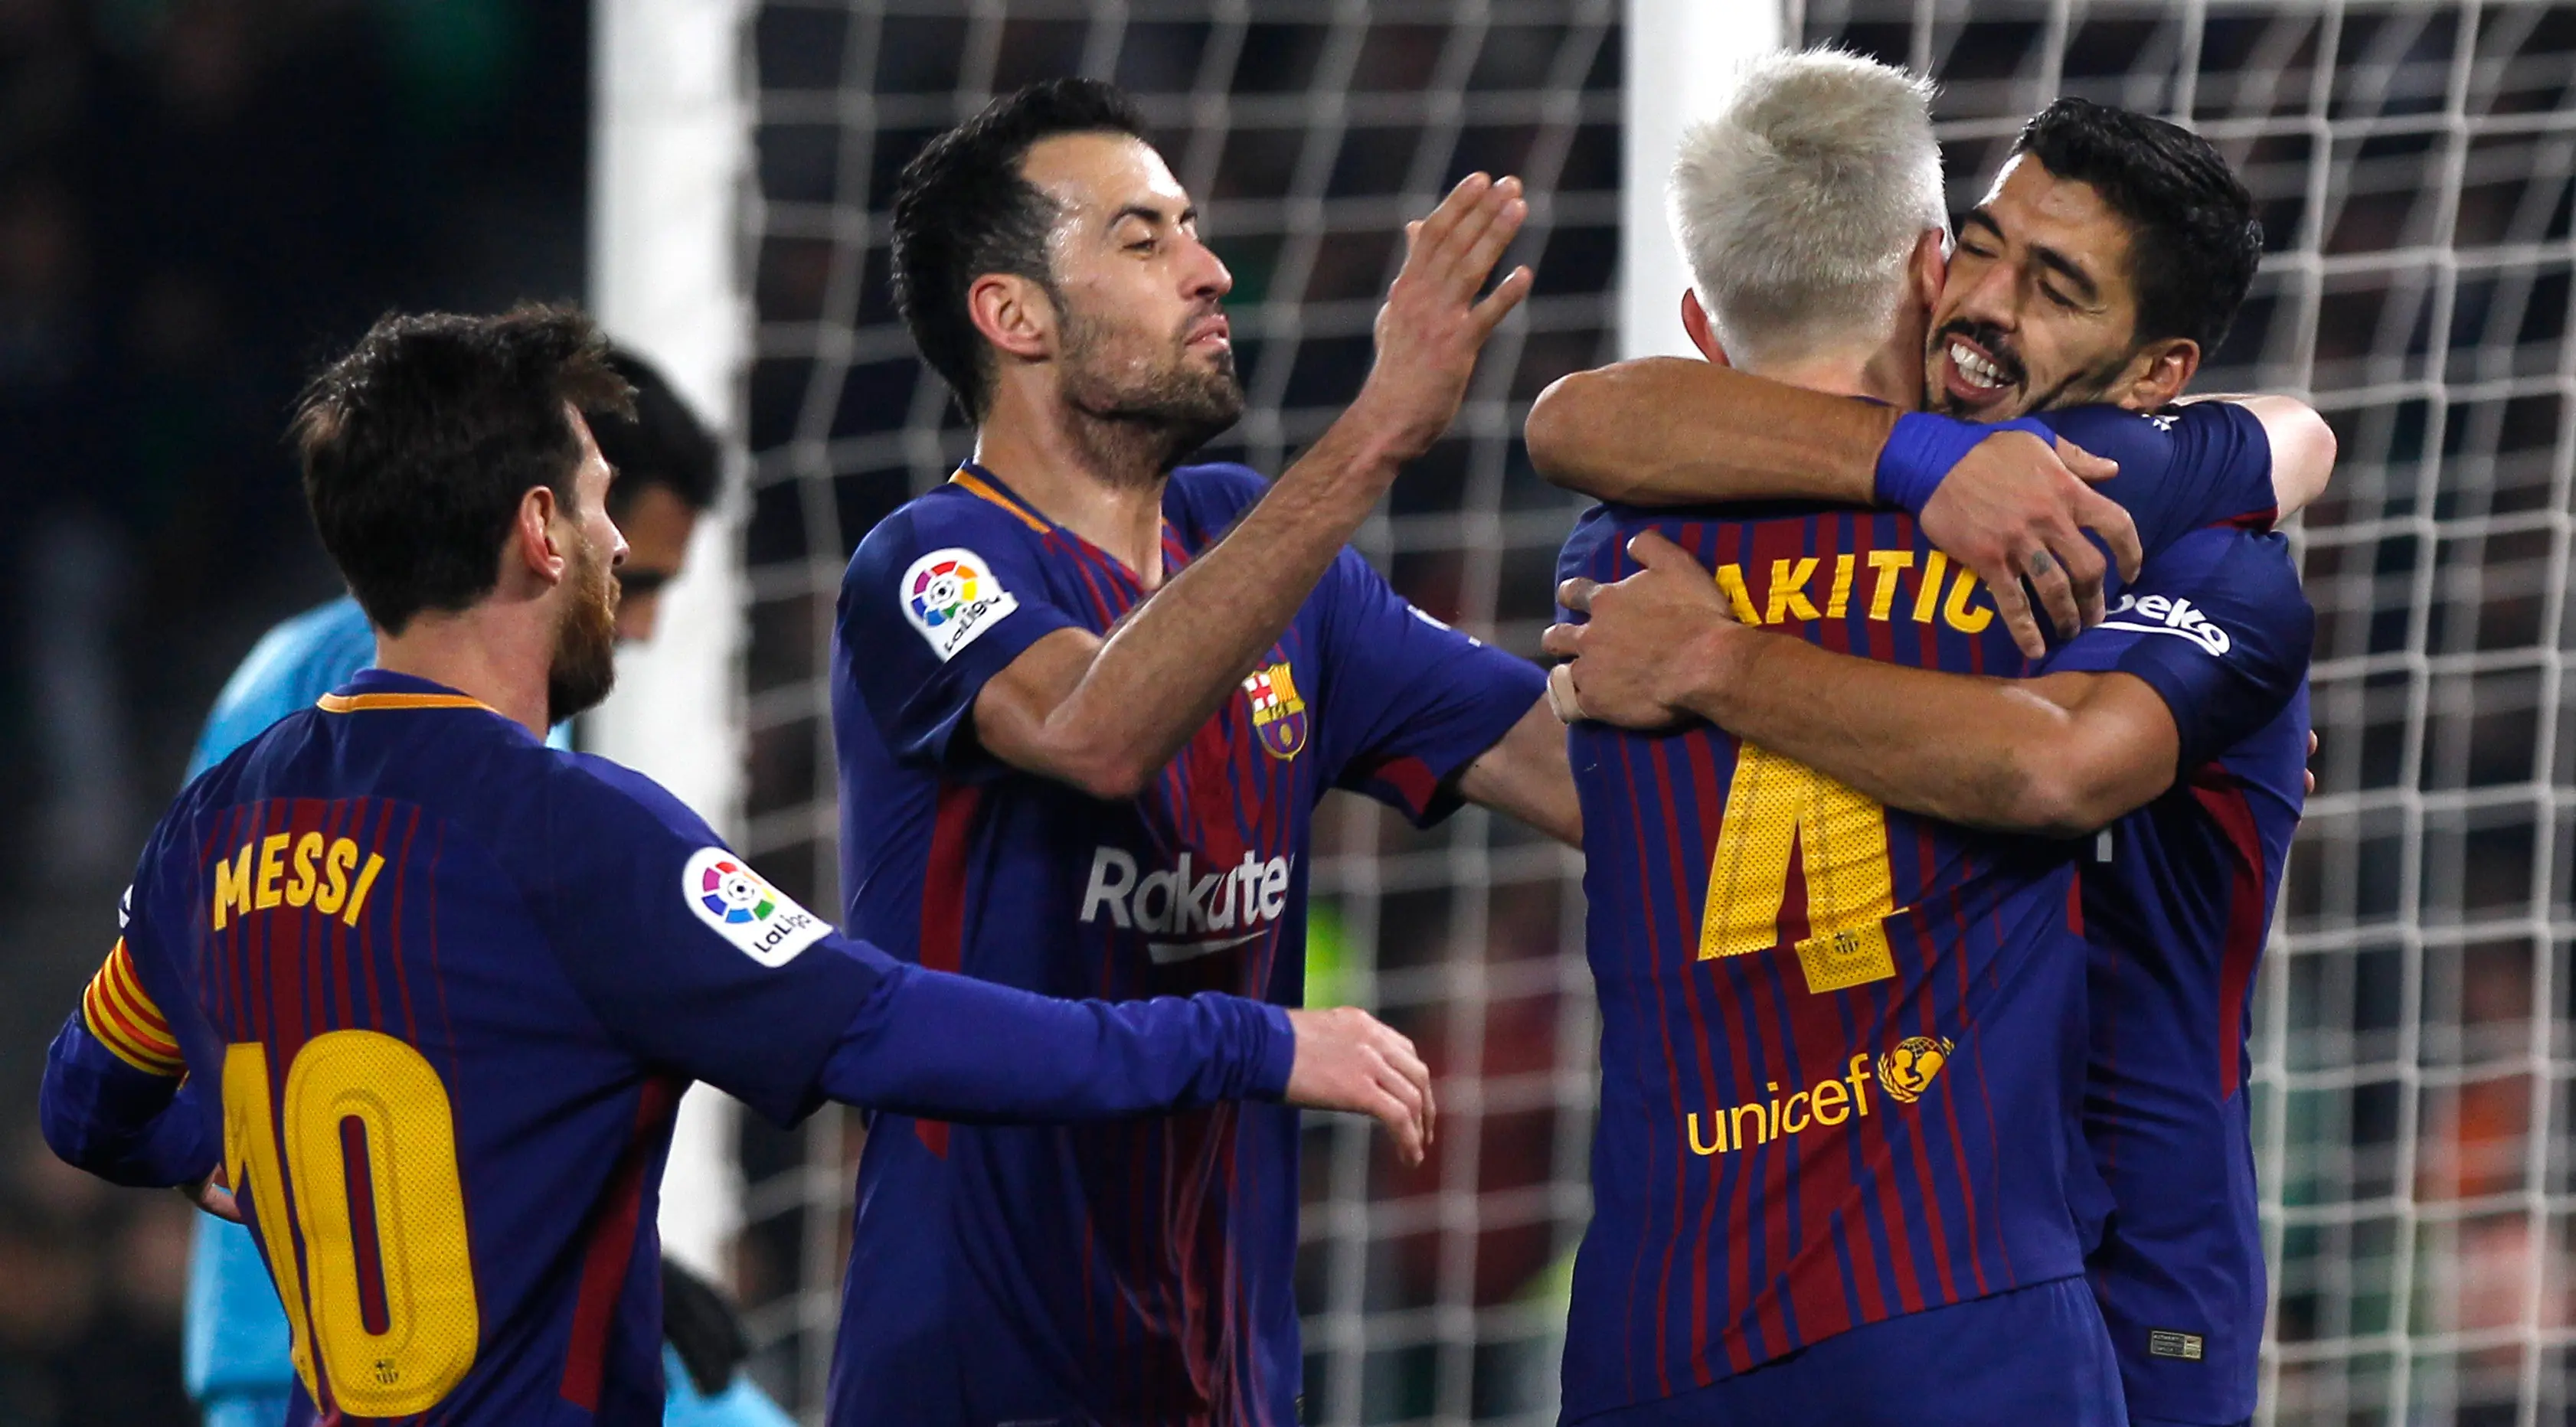 Pemain Barcelona, Luis Suarez dan rekan setimnya, Ivan Rakitic merayakan gol ke gawang Real Betis pada pertandingan lanjutan La Liga di Stadion Benito Villamarin, Minggu (21/1). Barcelona menyegel kemenangan dengan skor 5-0. (AP/Miguel Morenatti)